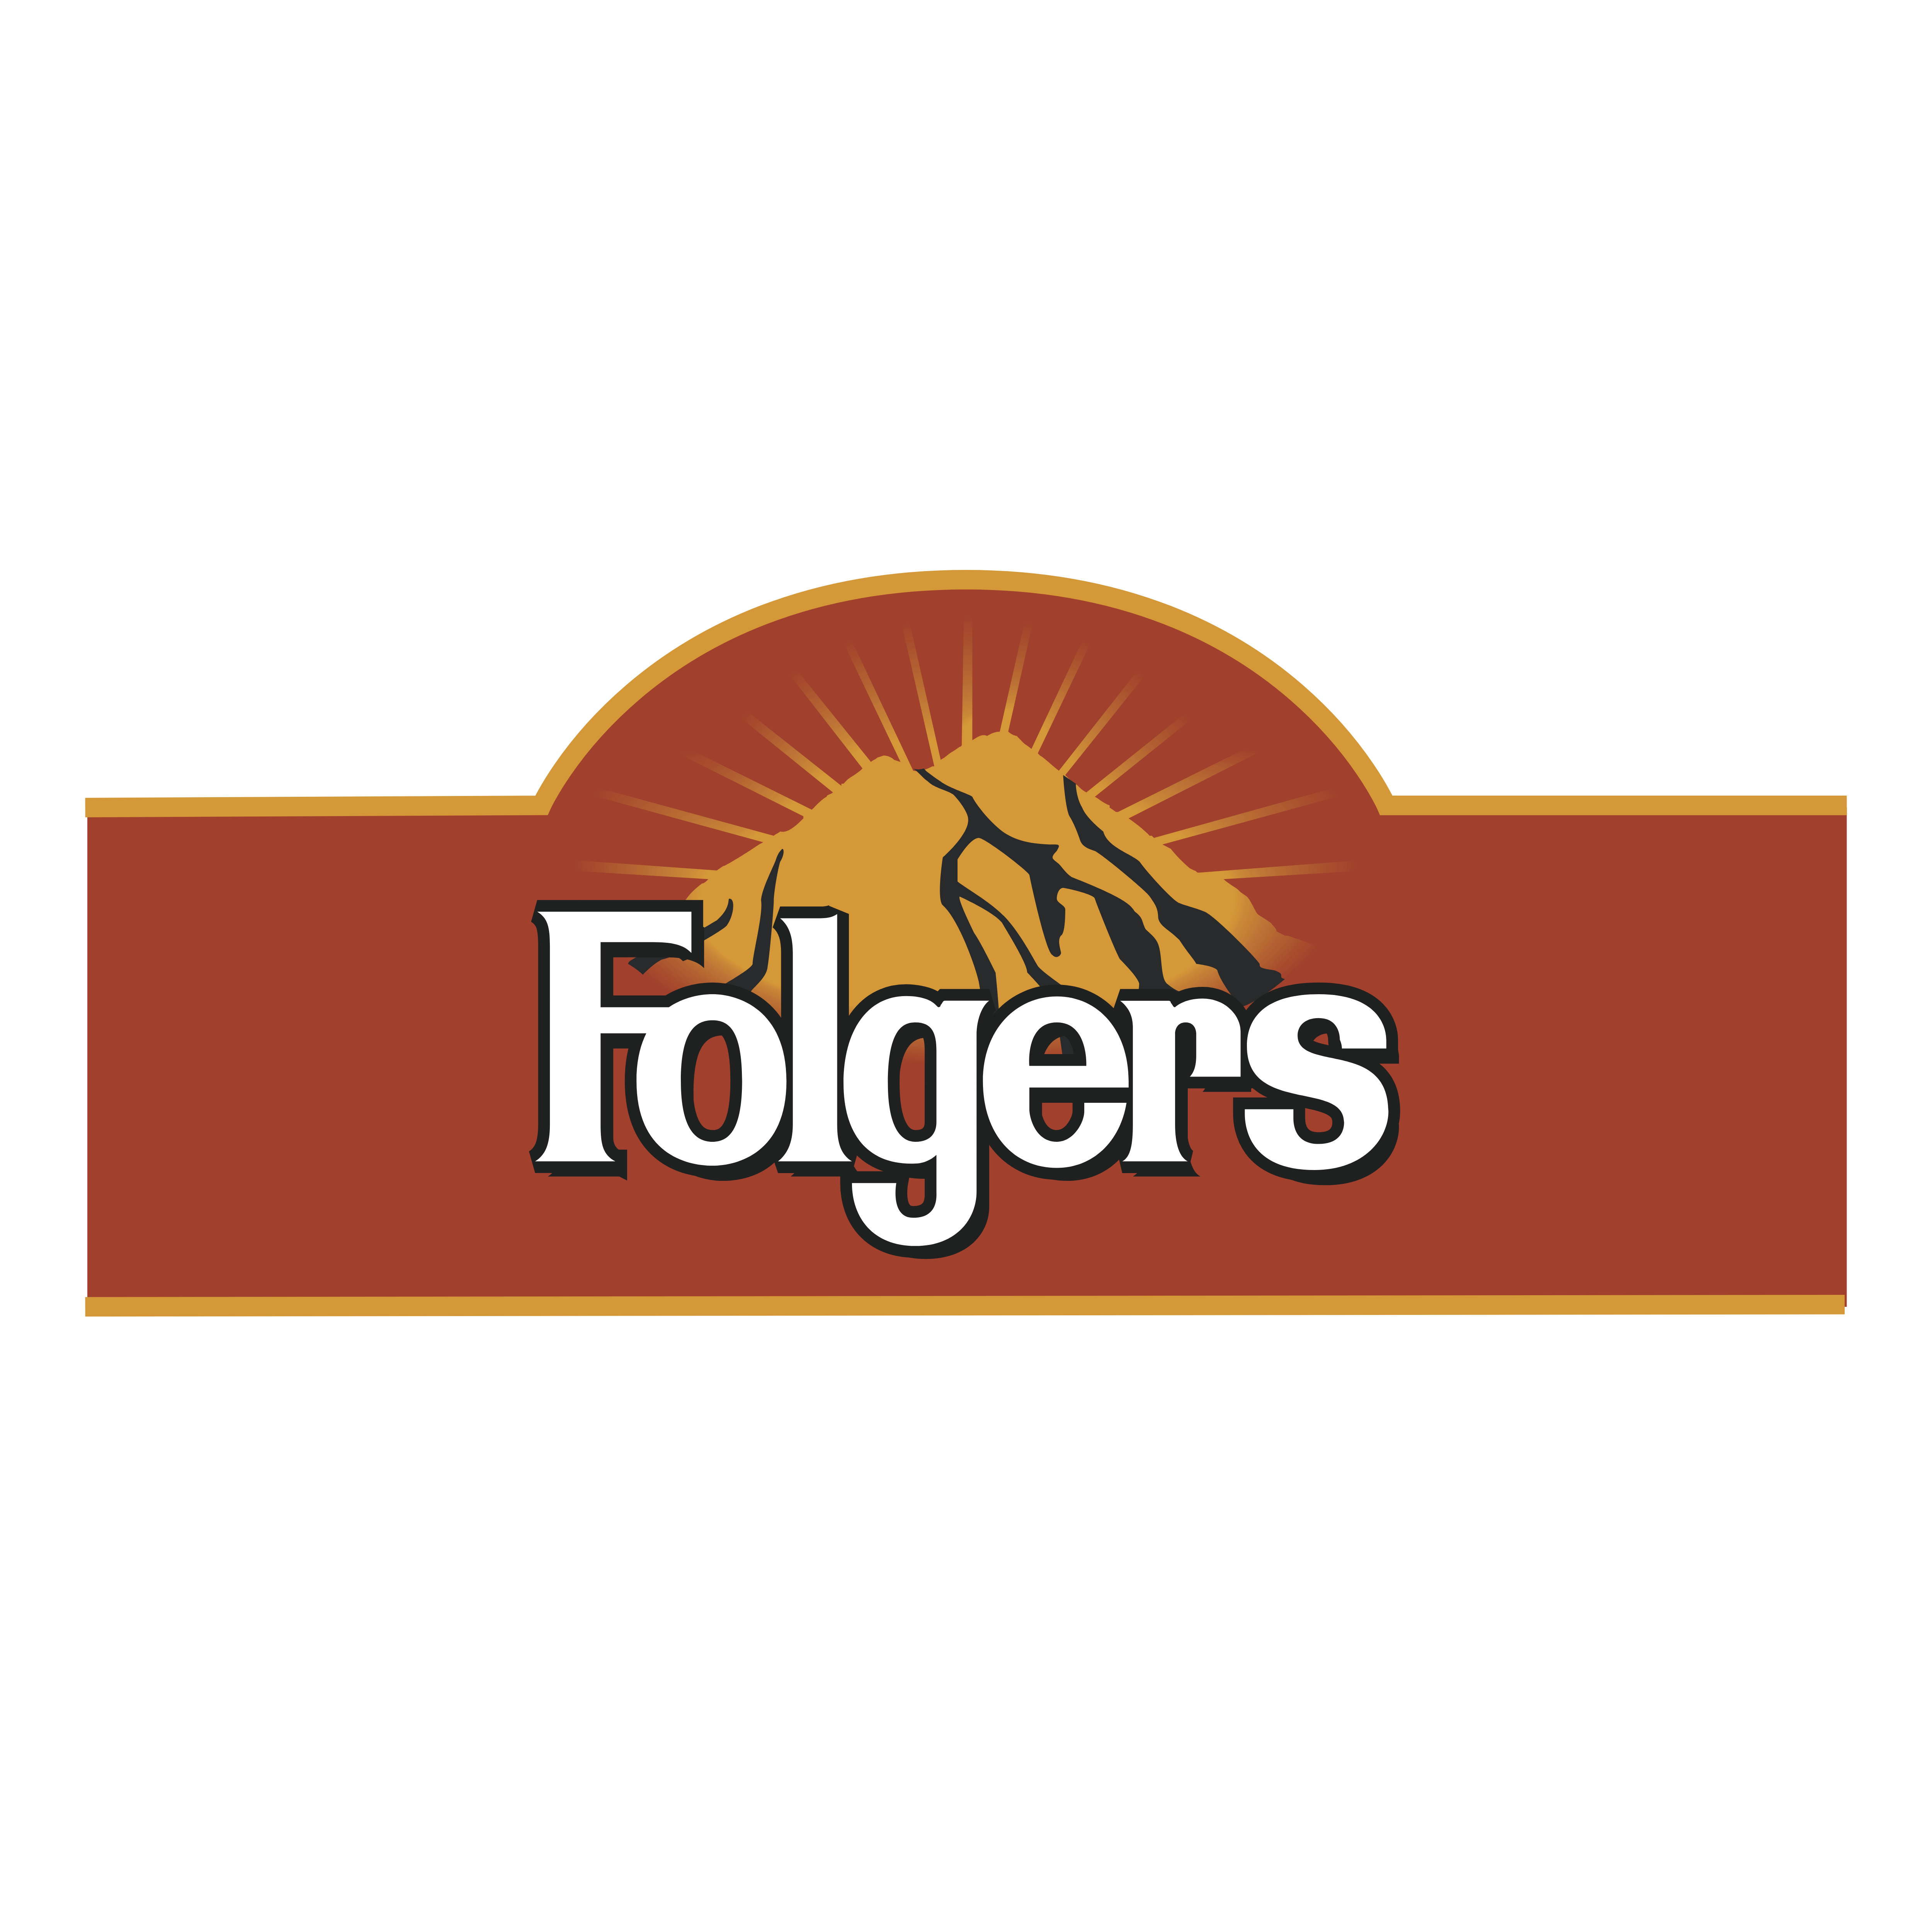 Folgers – Logos Download